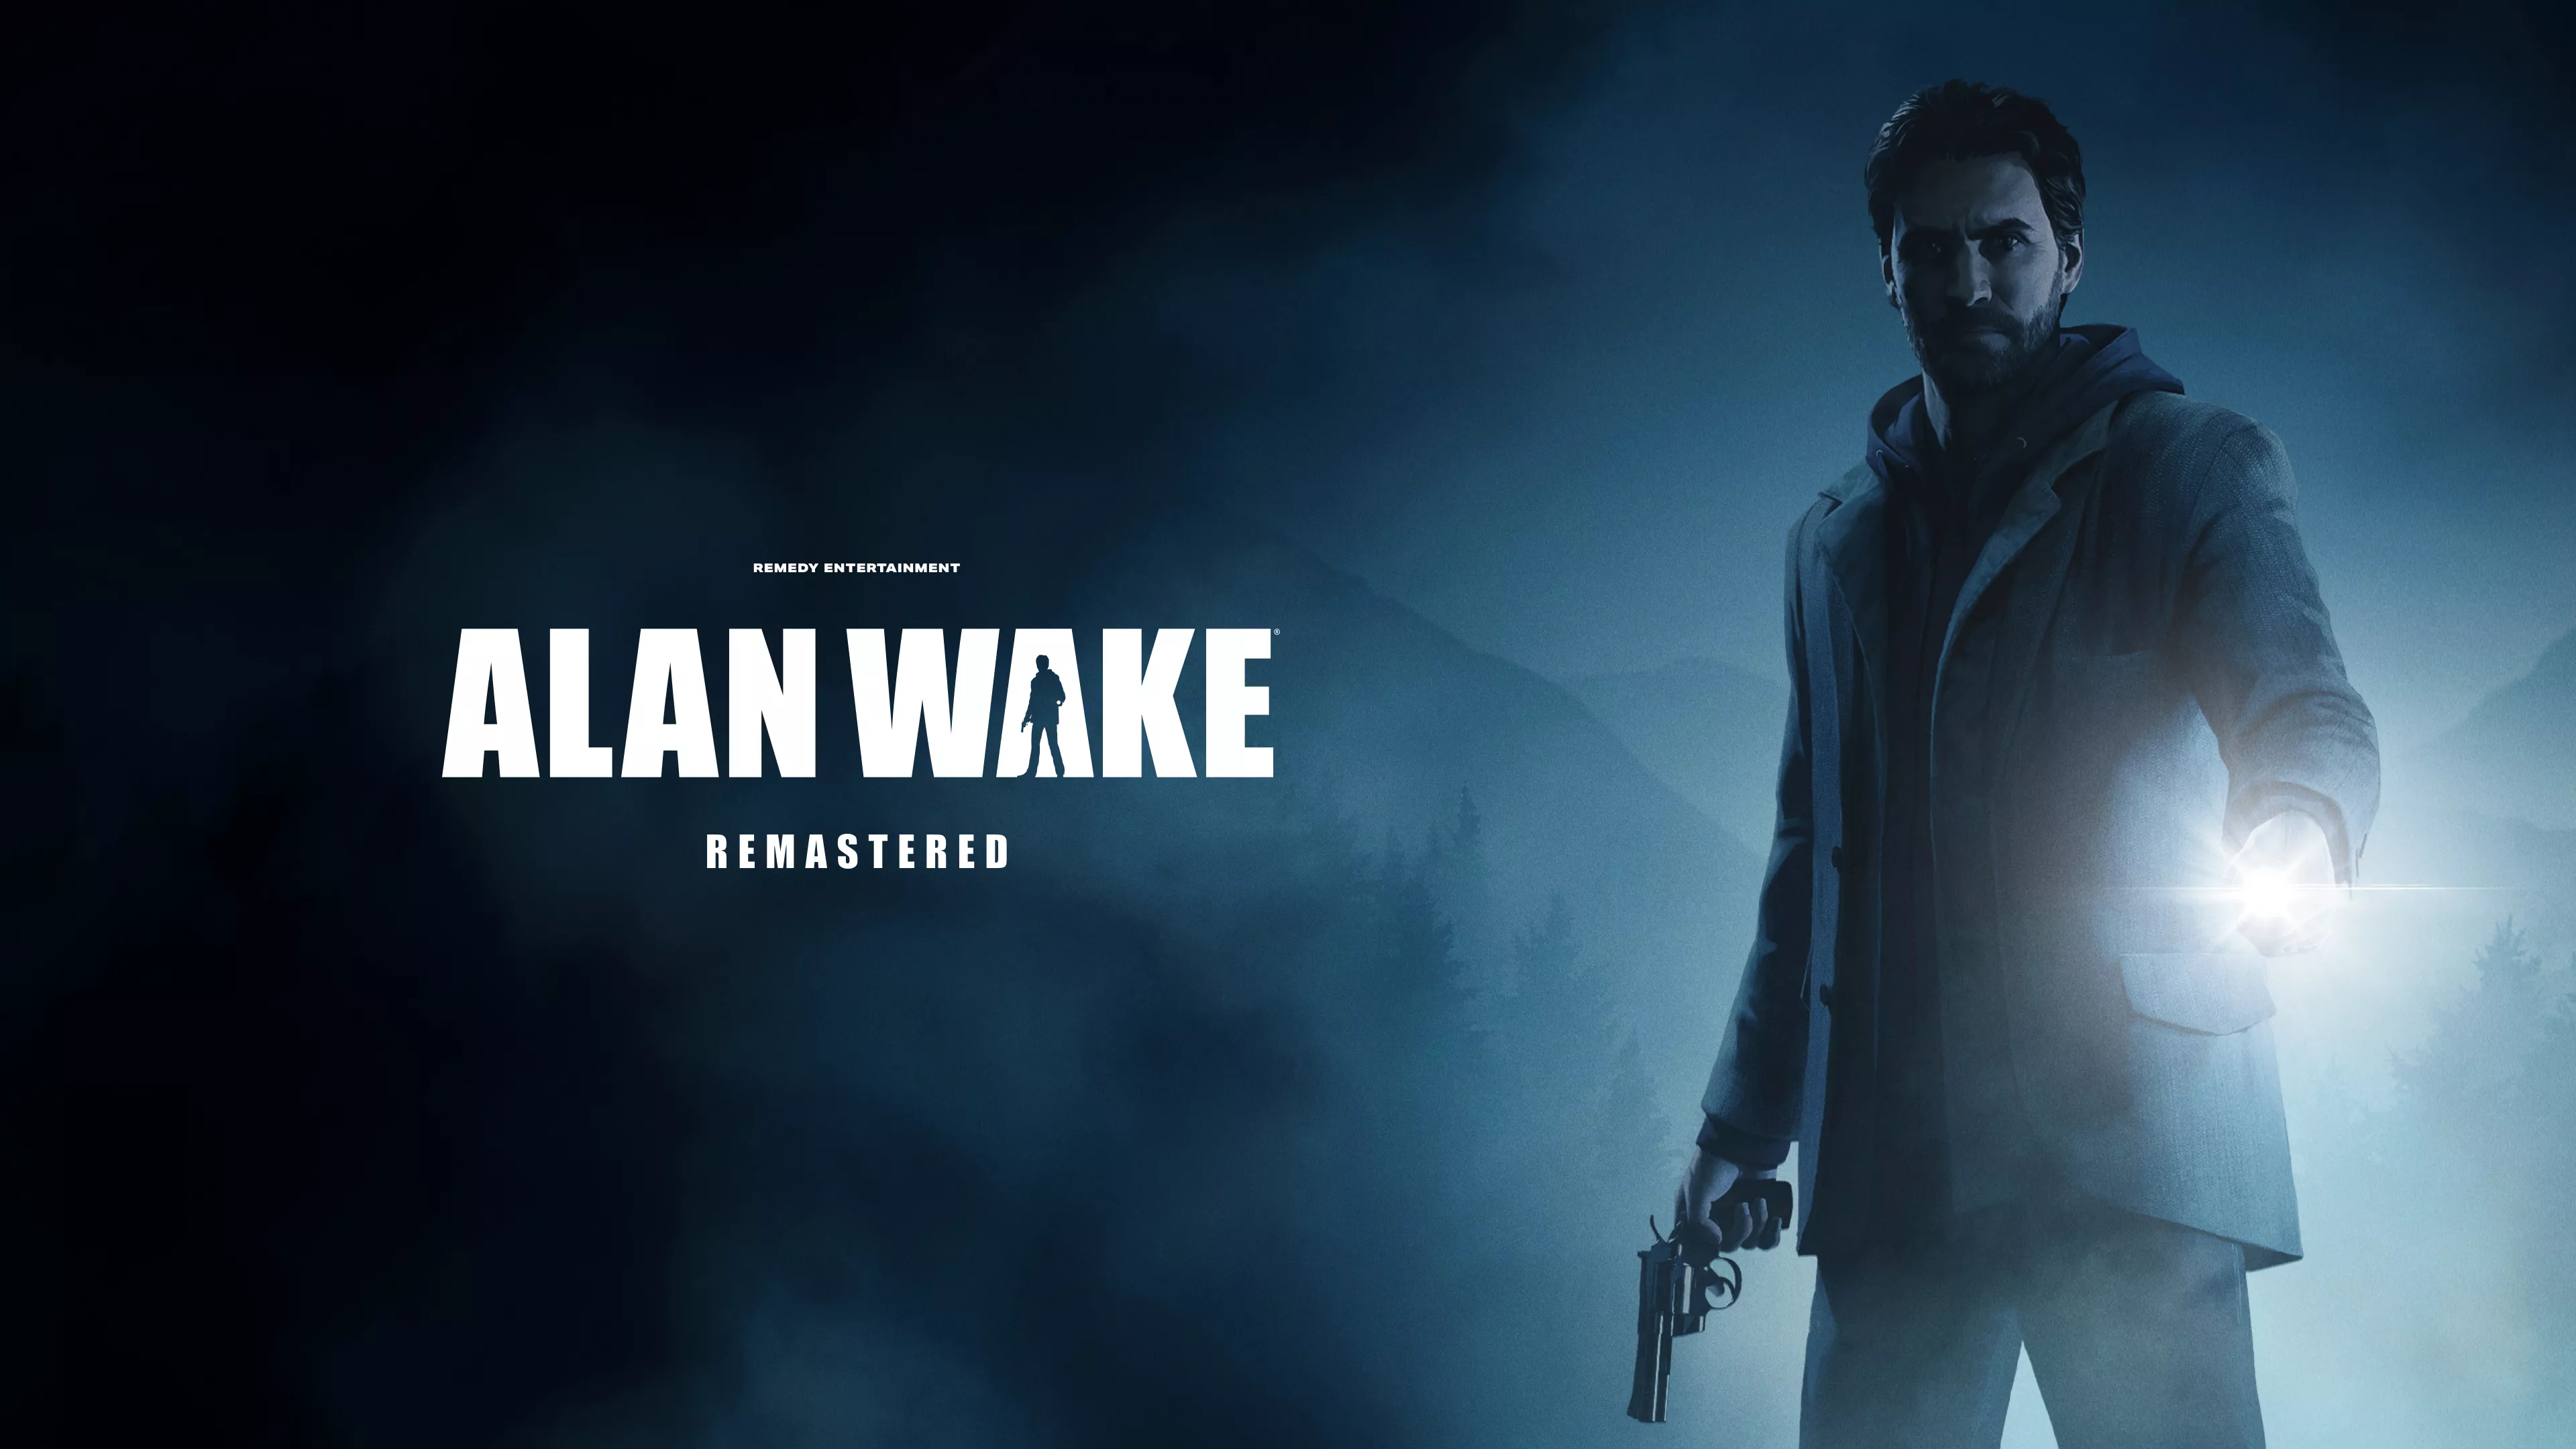 Launch Trailer zu Alan Wake Remastered veröffentlicht Heropic